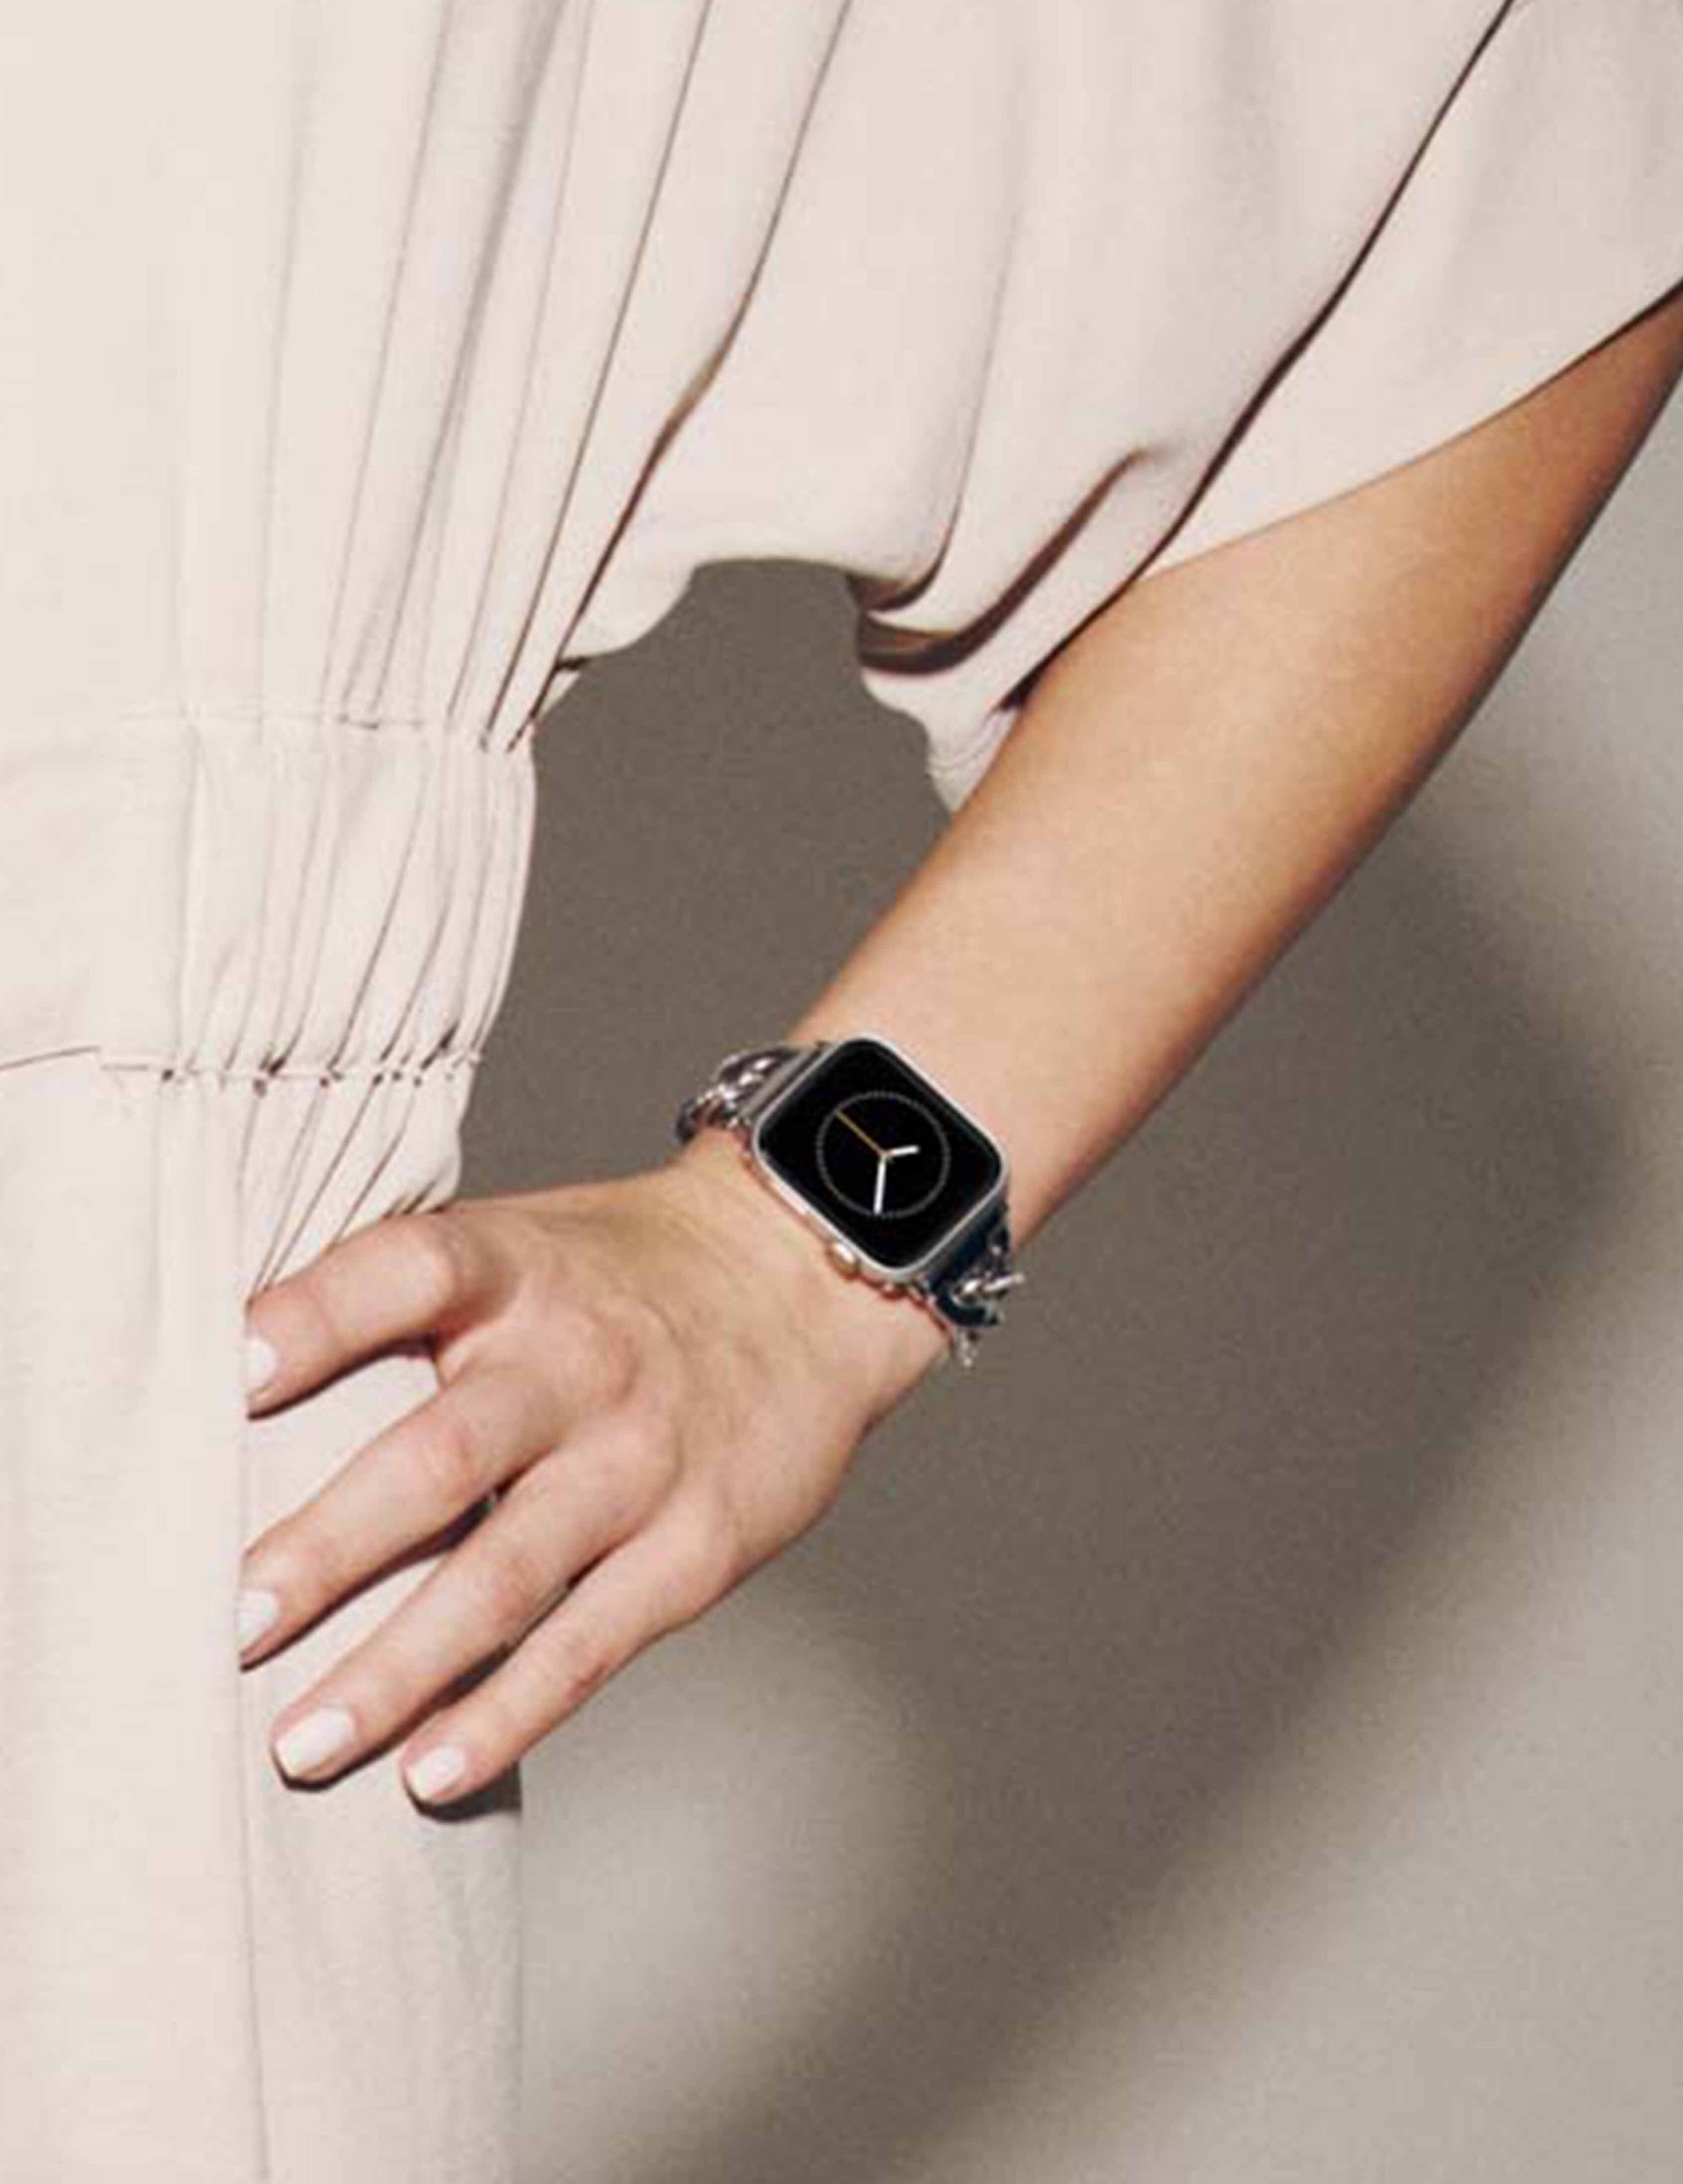 4 Anne Klein Watches • Official Retailer •